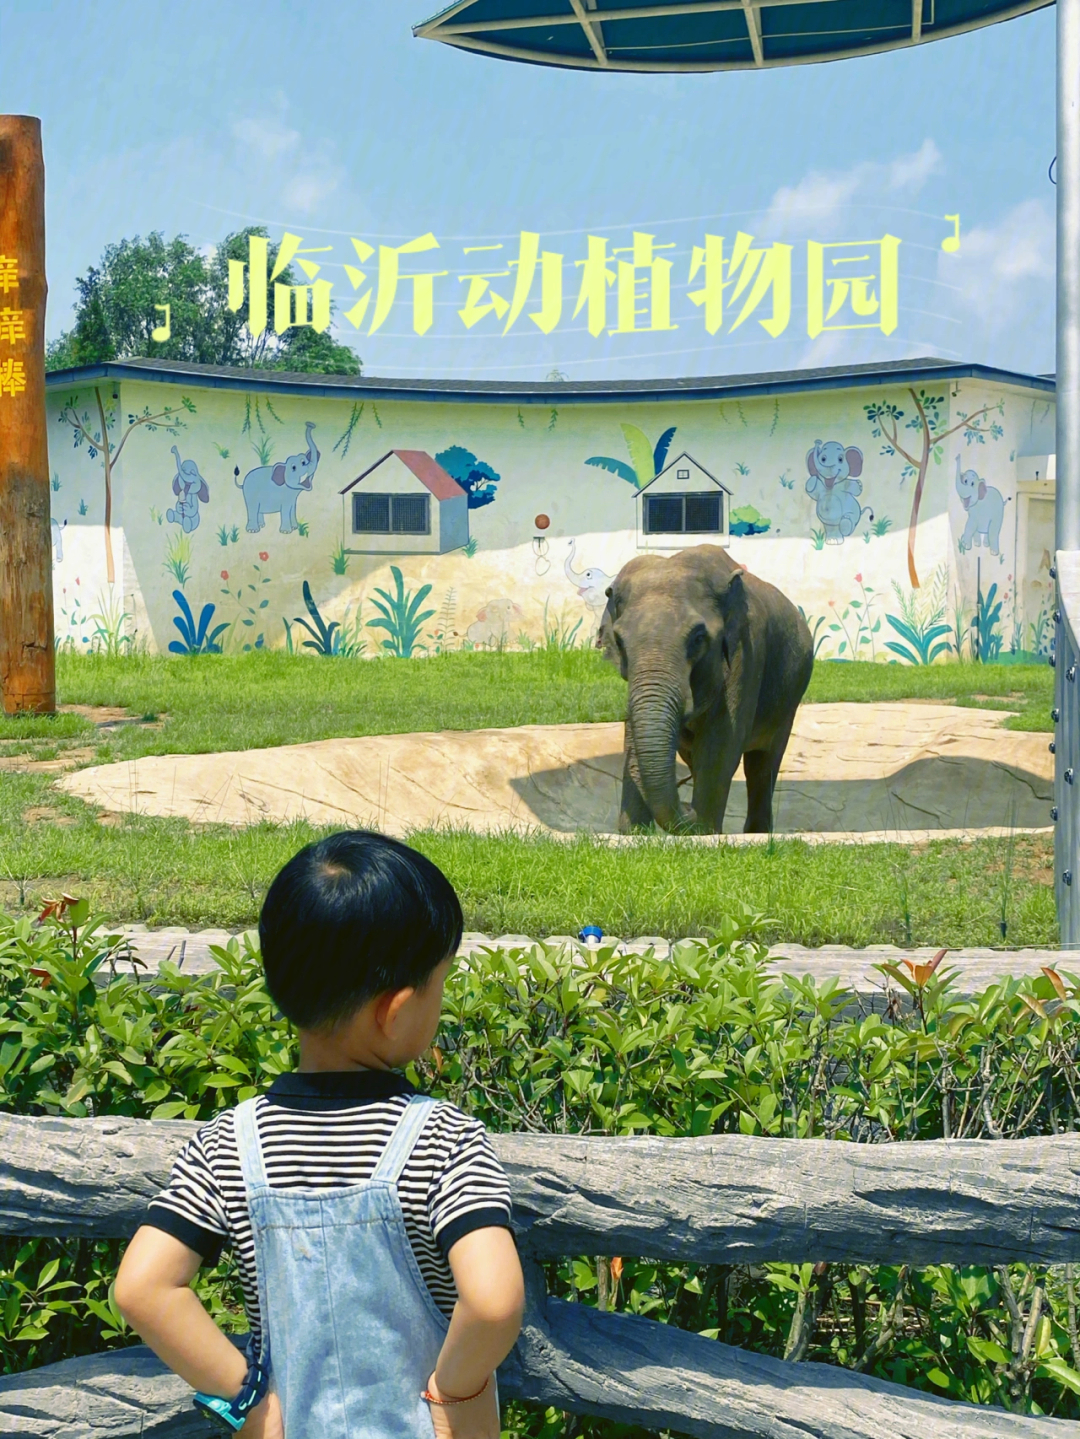 临沂河东动植物园地址图片